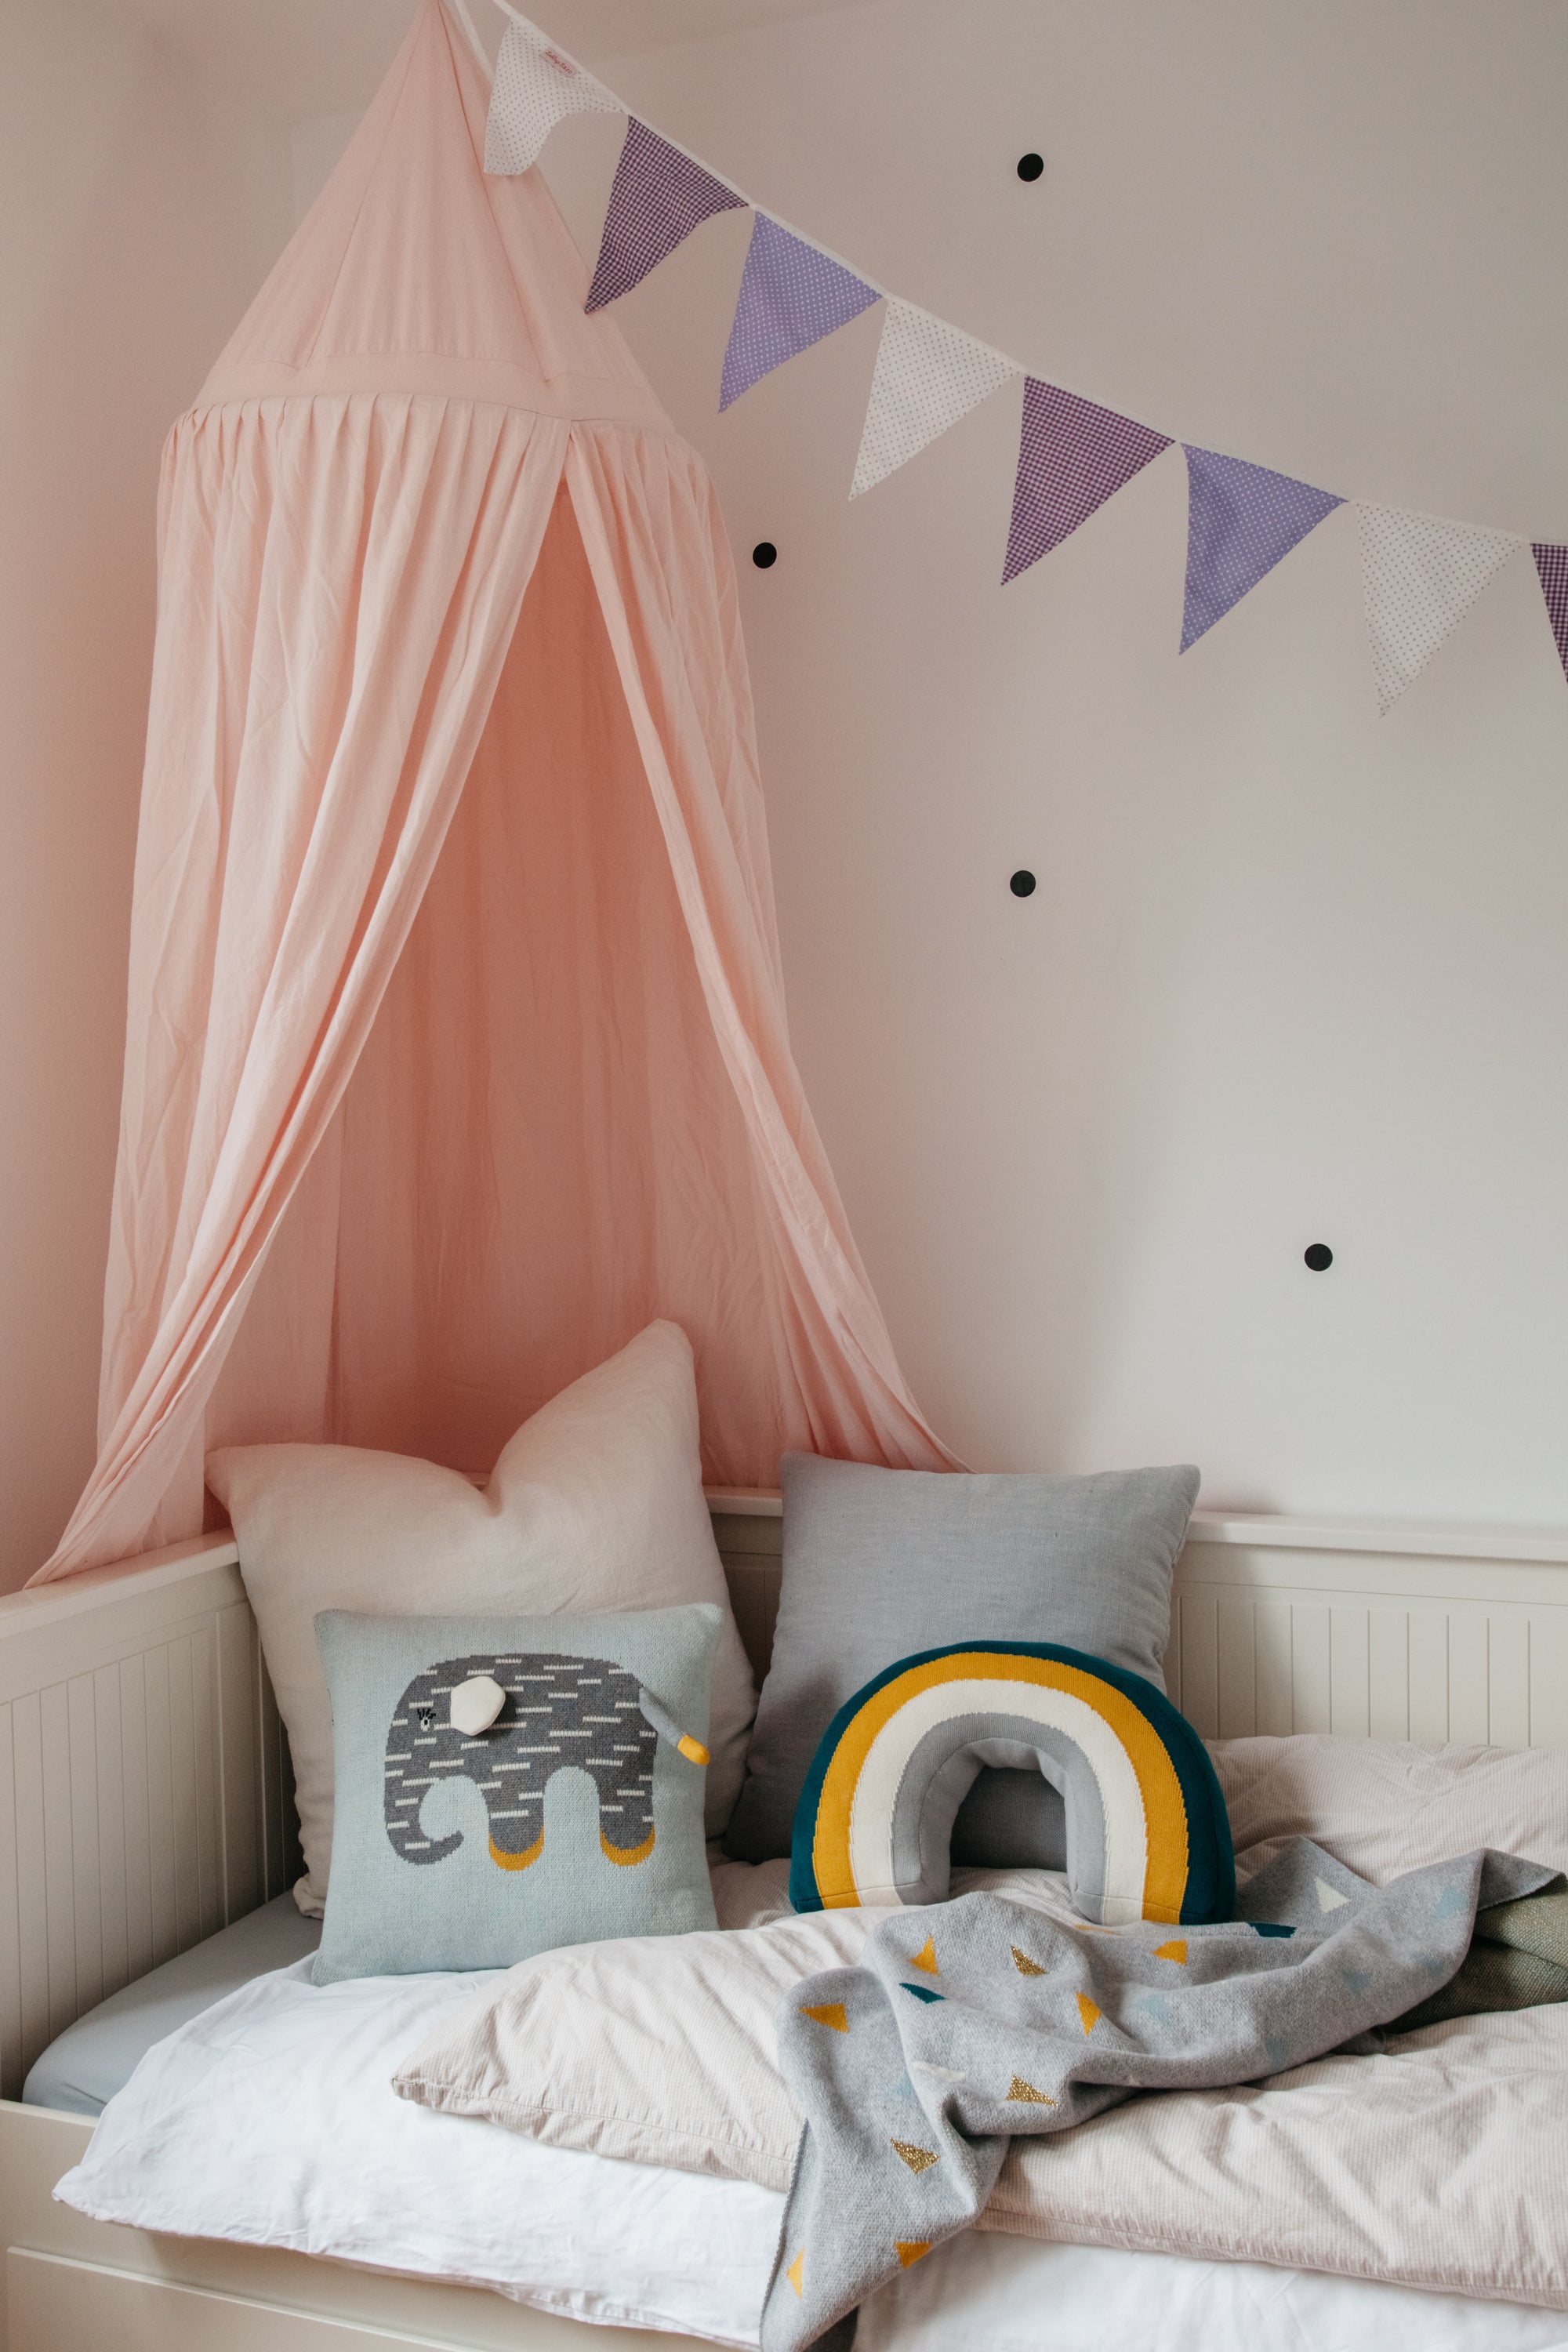 Où acheter un ciel de lit pour décorer la chambre de bébé ?